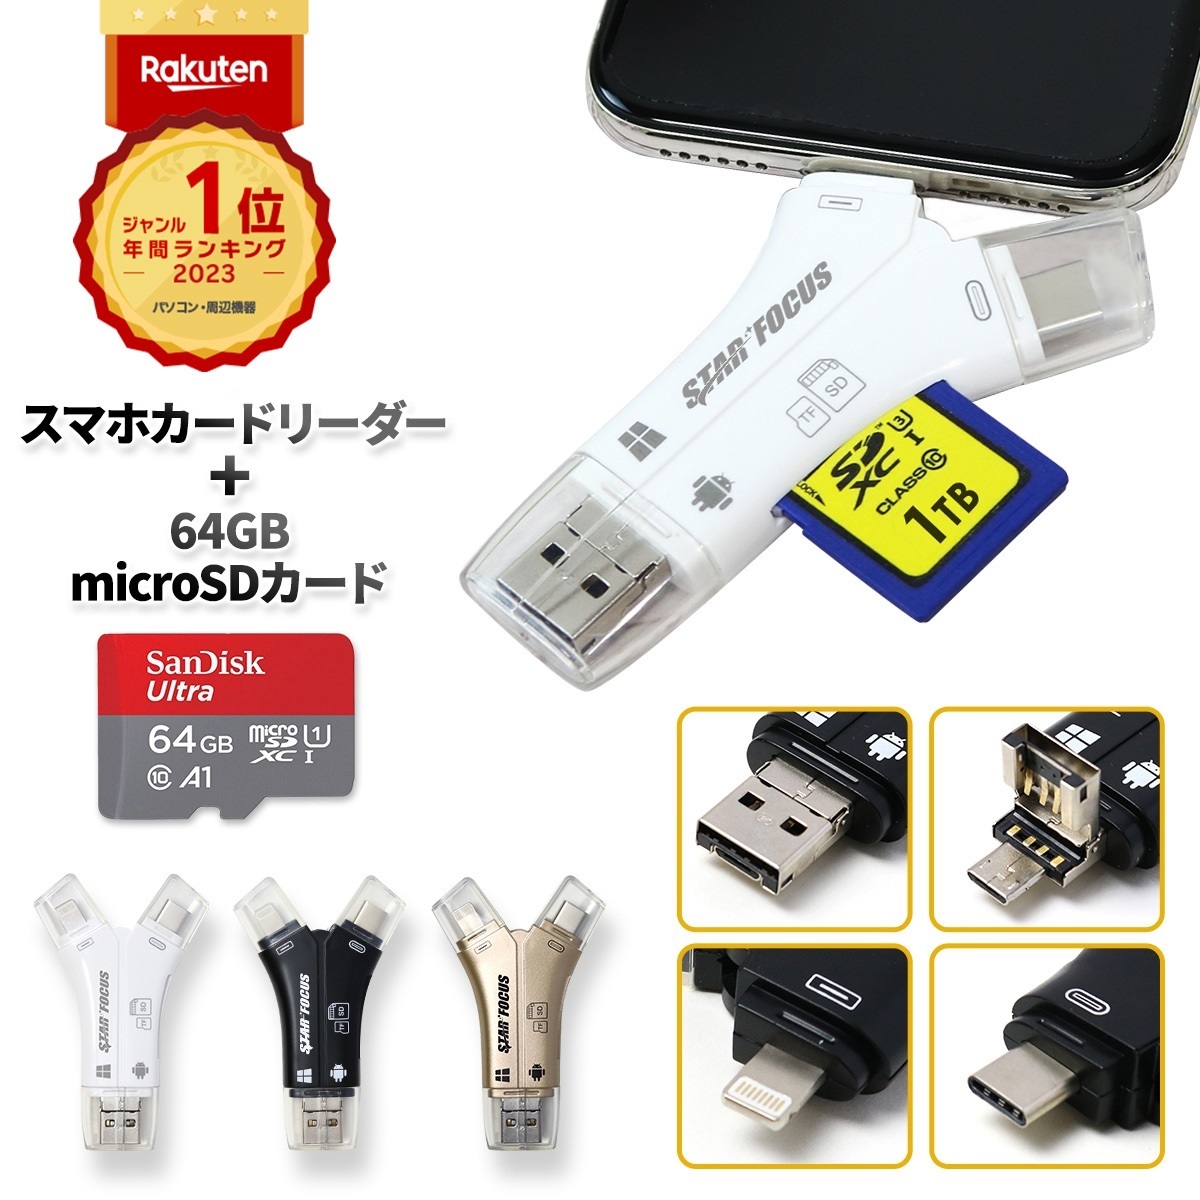 スマホの溜まった写真の整理に SDカードリーダー iPhone バックアップ ファッションなデザイン USB USBメモリ 77％以上節約 写真 日本語取説 SDカードカメラリーダー 保存 マイクロSDカードリーダー 6ヶ月保証 microSDカードリーダー スマホ